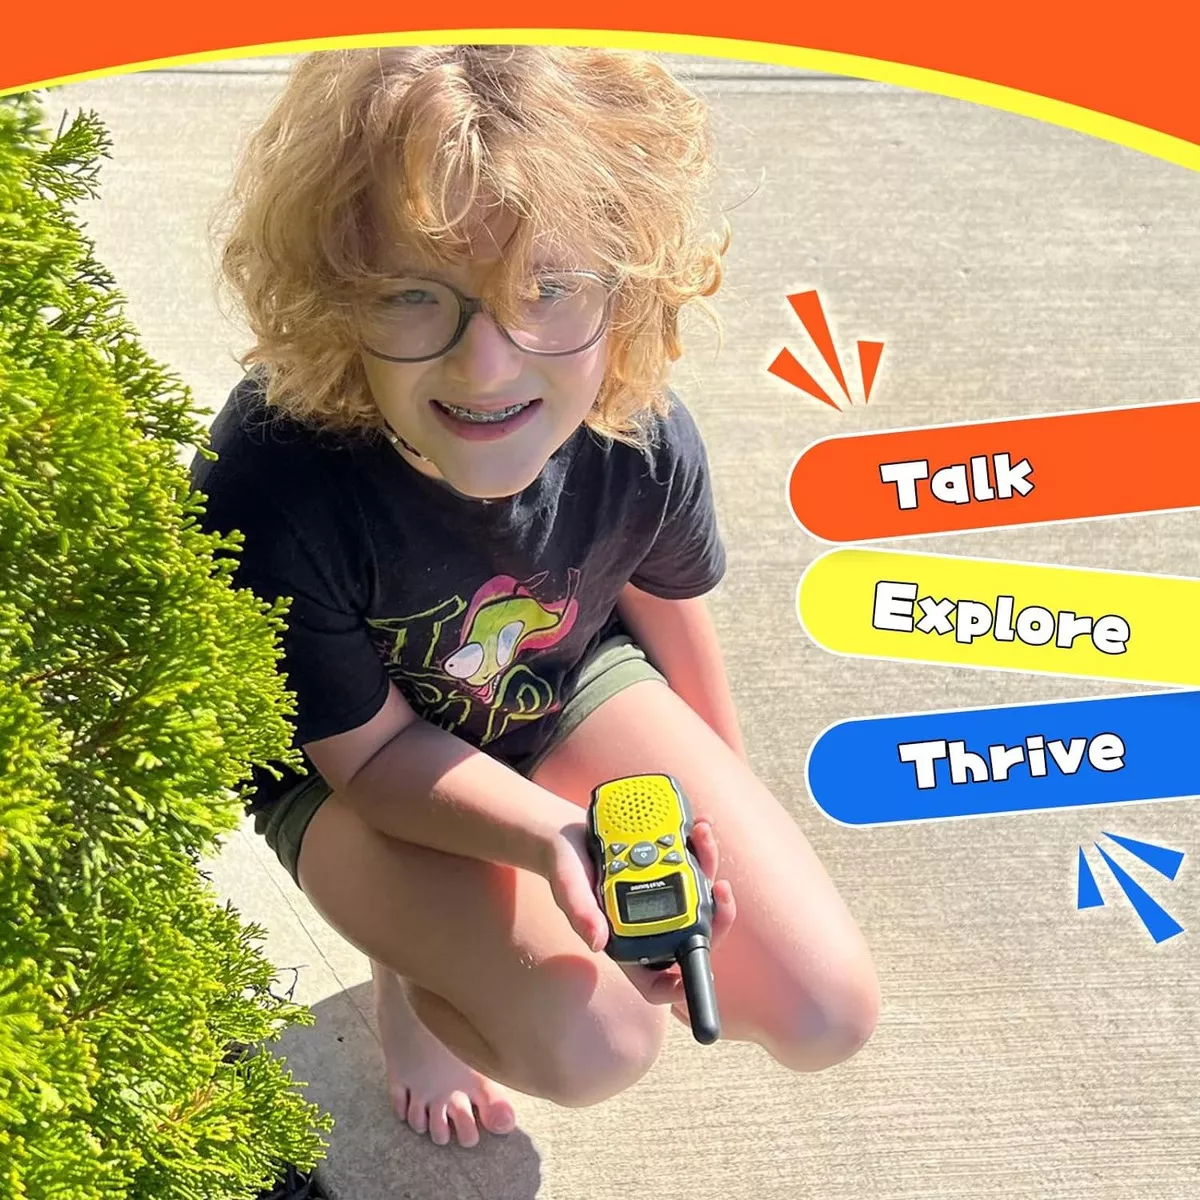 Segunda imagen para búsqueda de walkie talkie ninos recargable